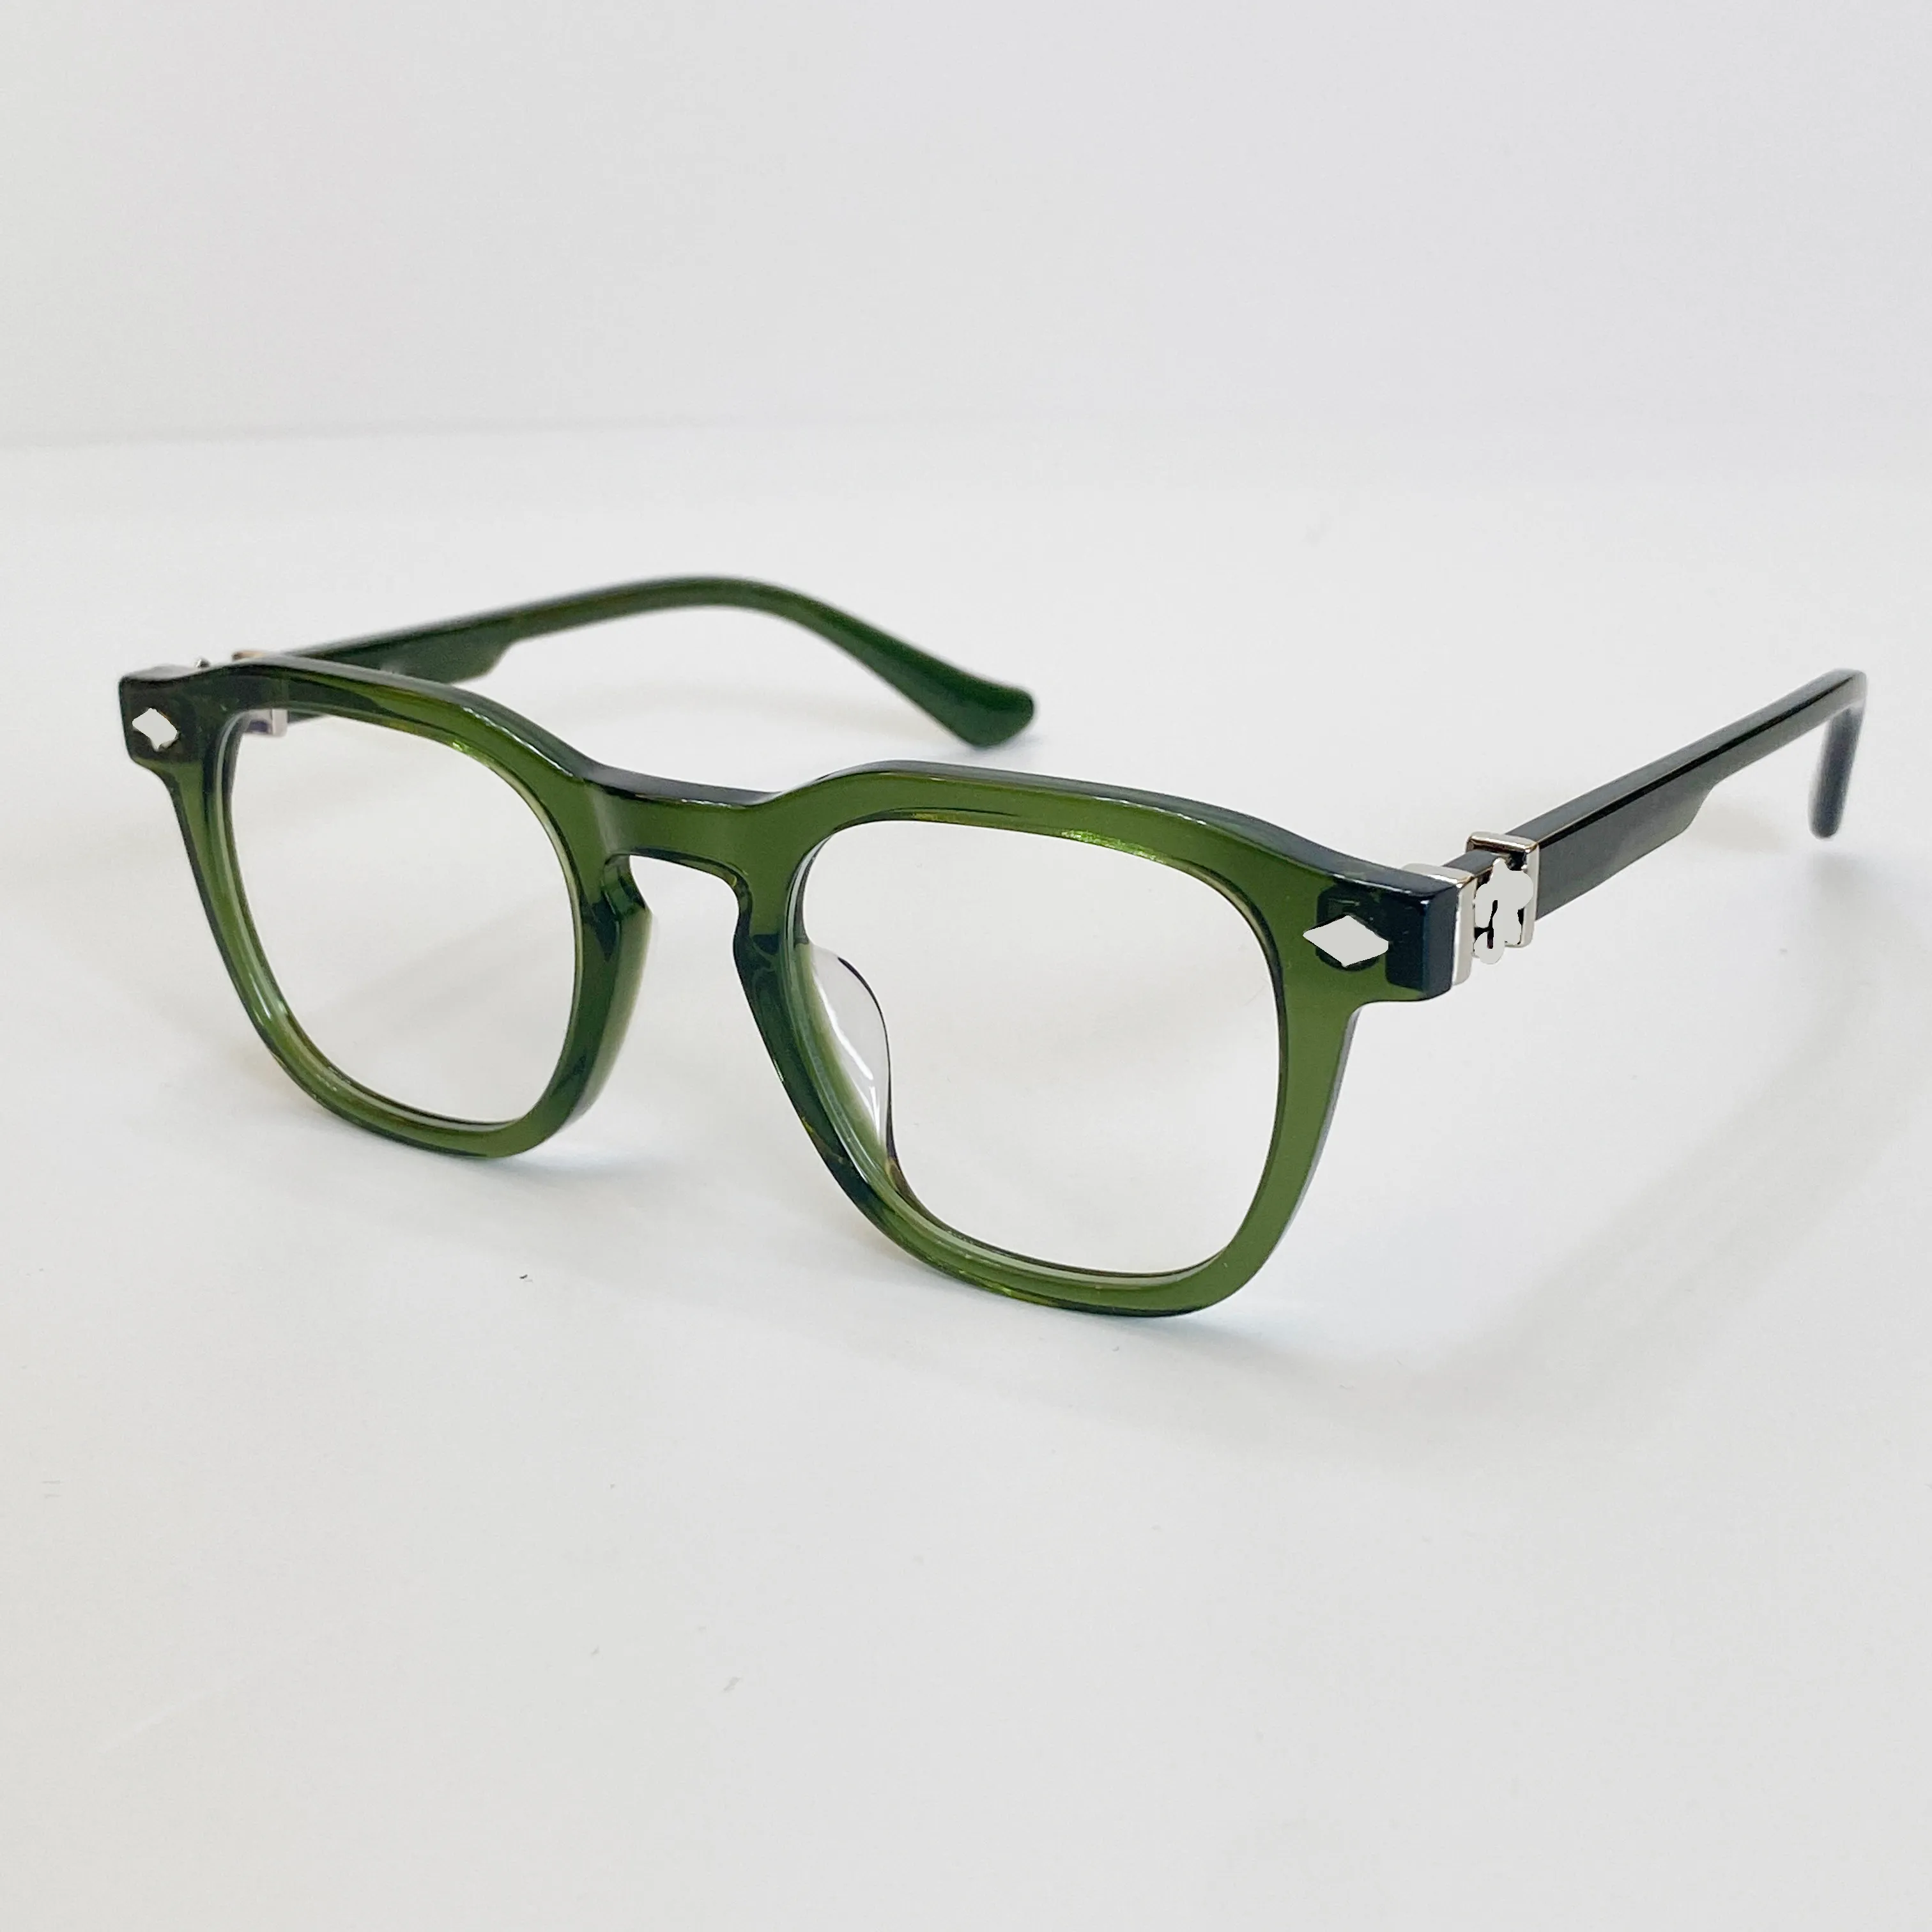 luxury designer chr optical sunglasses frames for men mens woman sun glasses for women heavy process clear green frame radiati283V